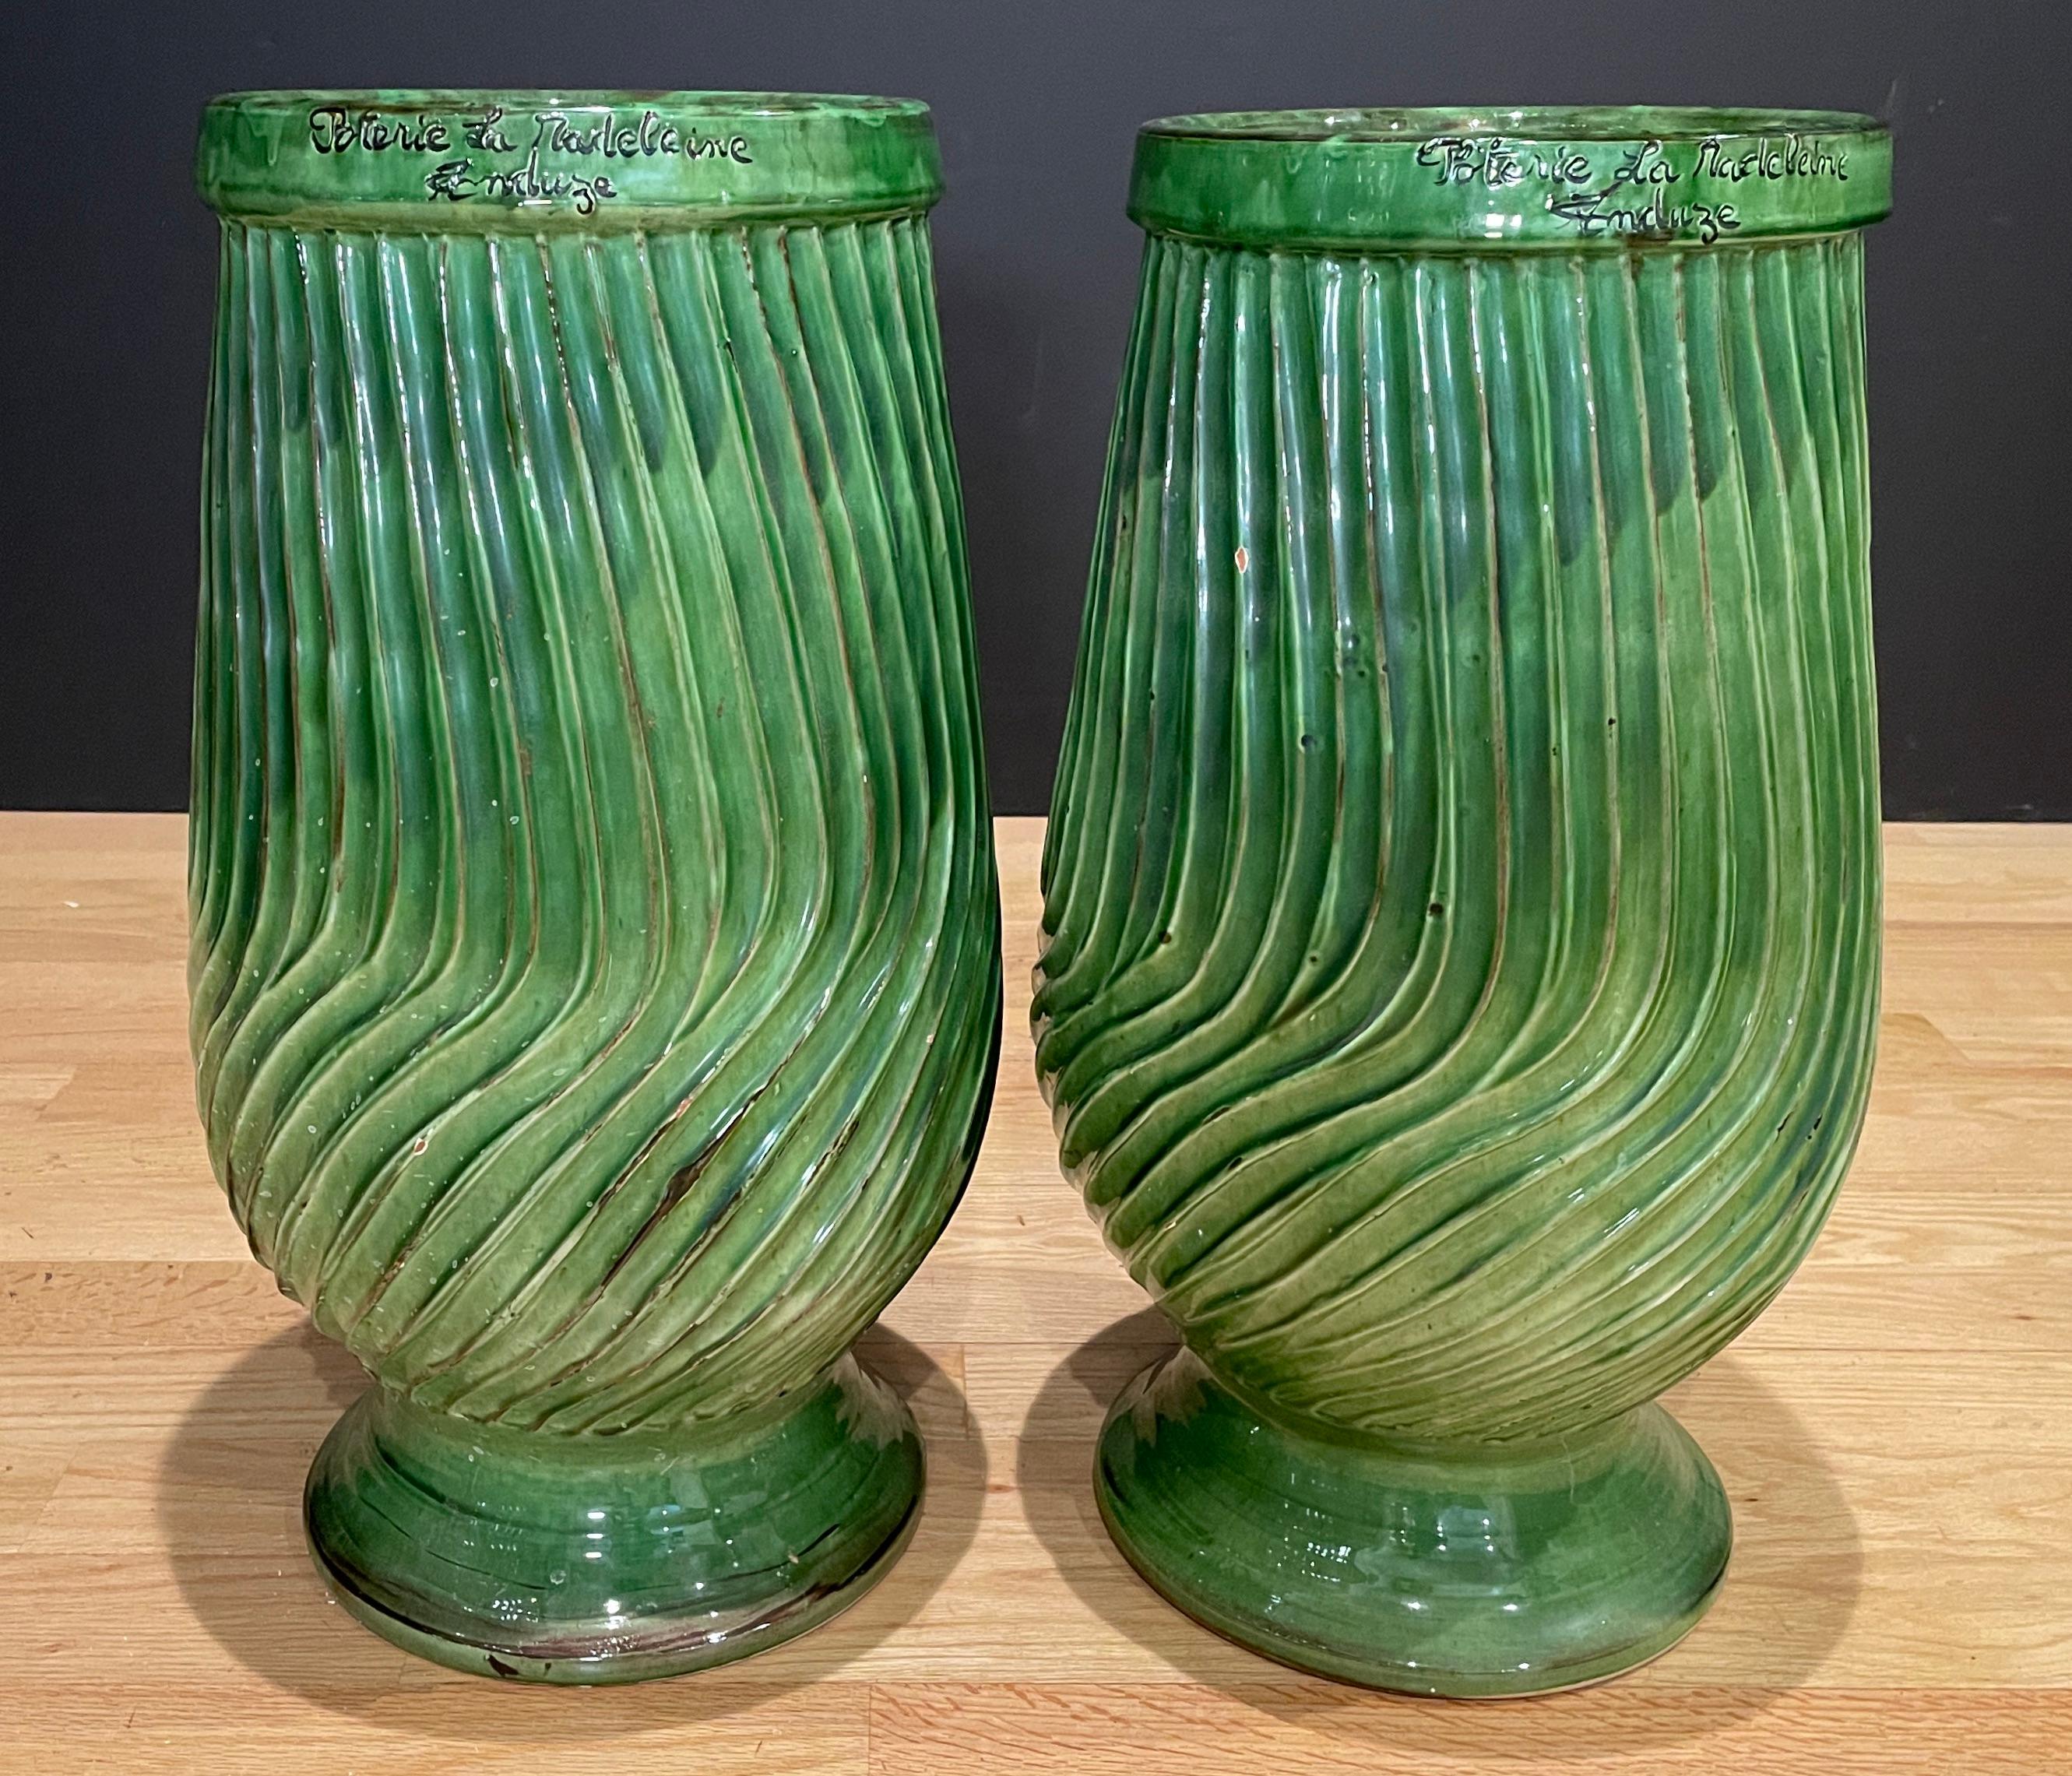 Paire de pots striés d'Anduze à glaçure verte en forme de jarre à huile traditionnelle. Magnifiques vases d'Anduze finis en vert traditionnel. Fabriqué à la main à Anduze (France). Ouverture 8.5